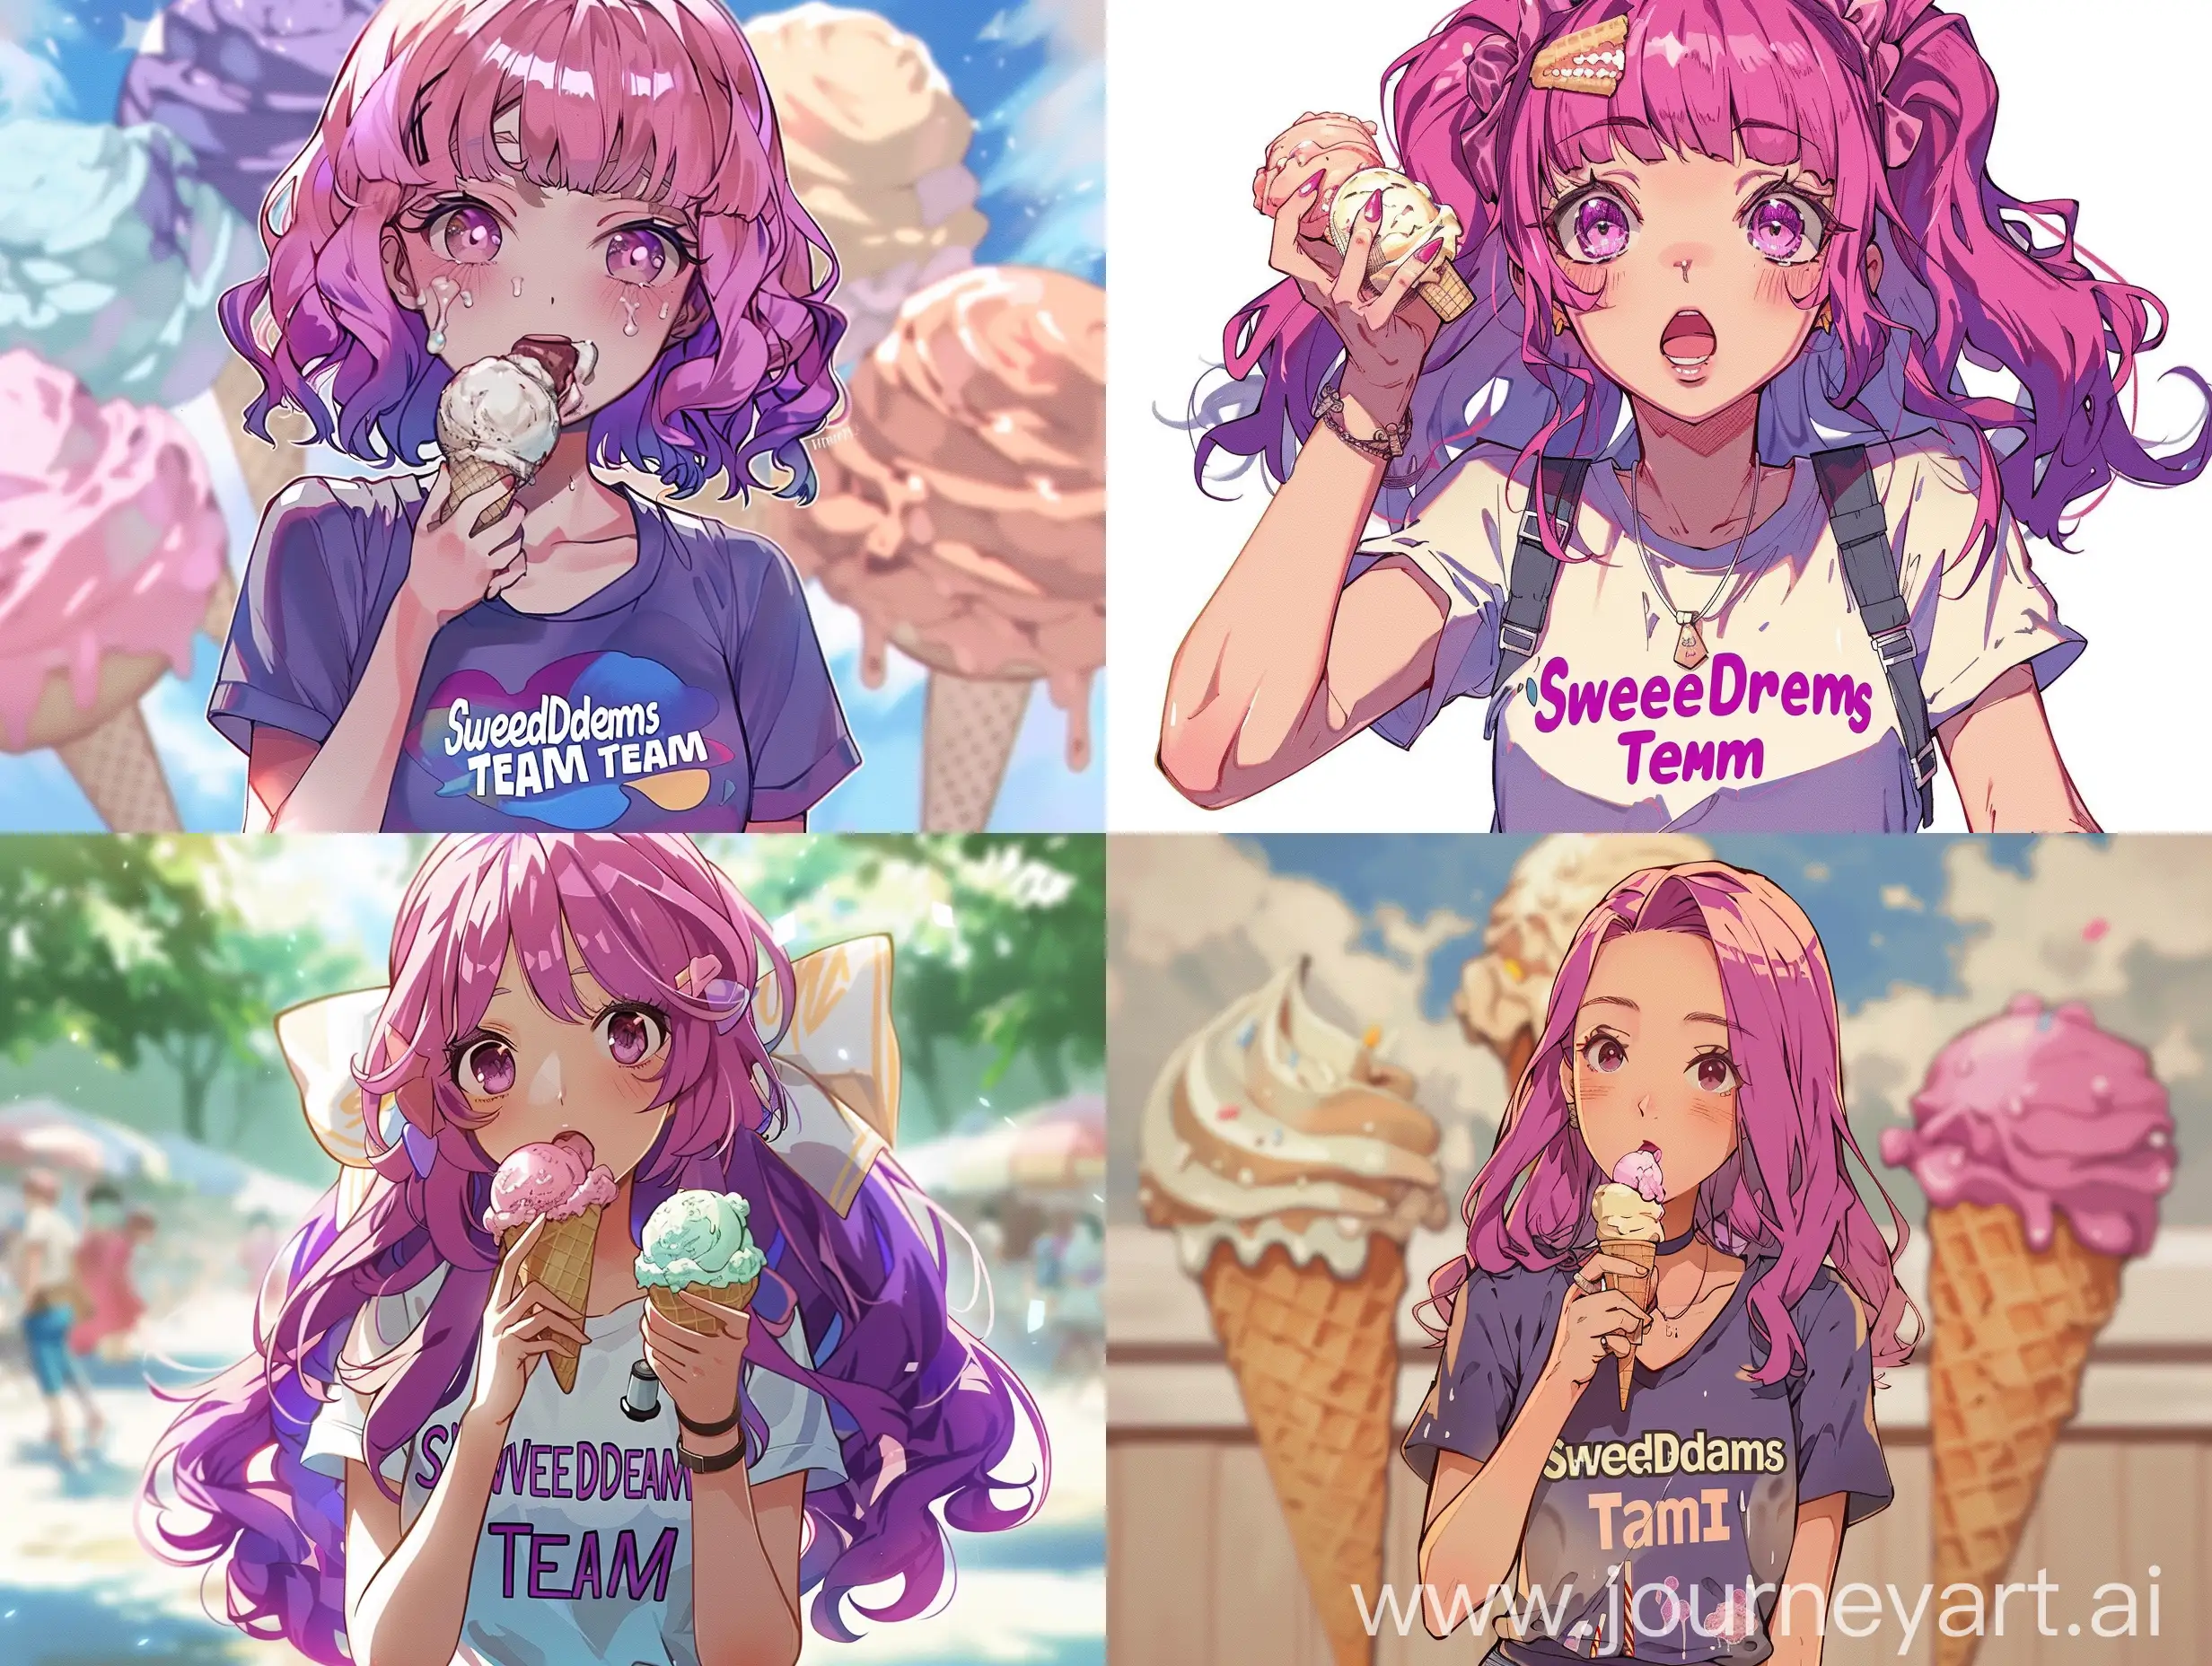 аниме девушка с фиолетово-розовыми волосами, модно одетая с футболкой с надписью "SweetDreams Team", которая есть мороженное